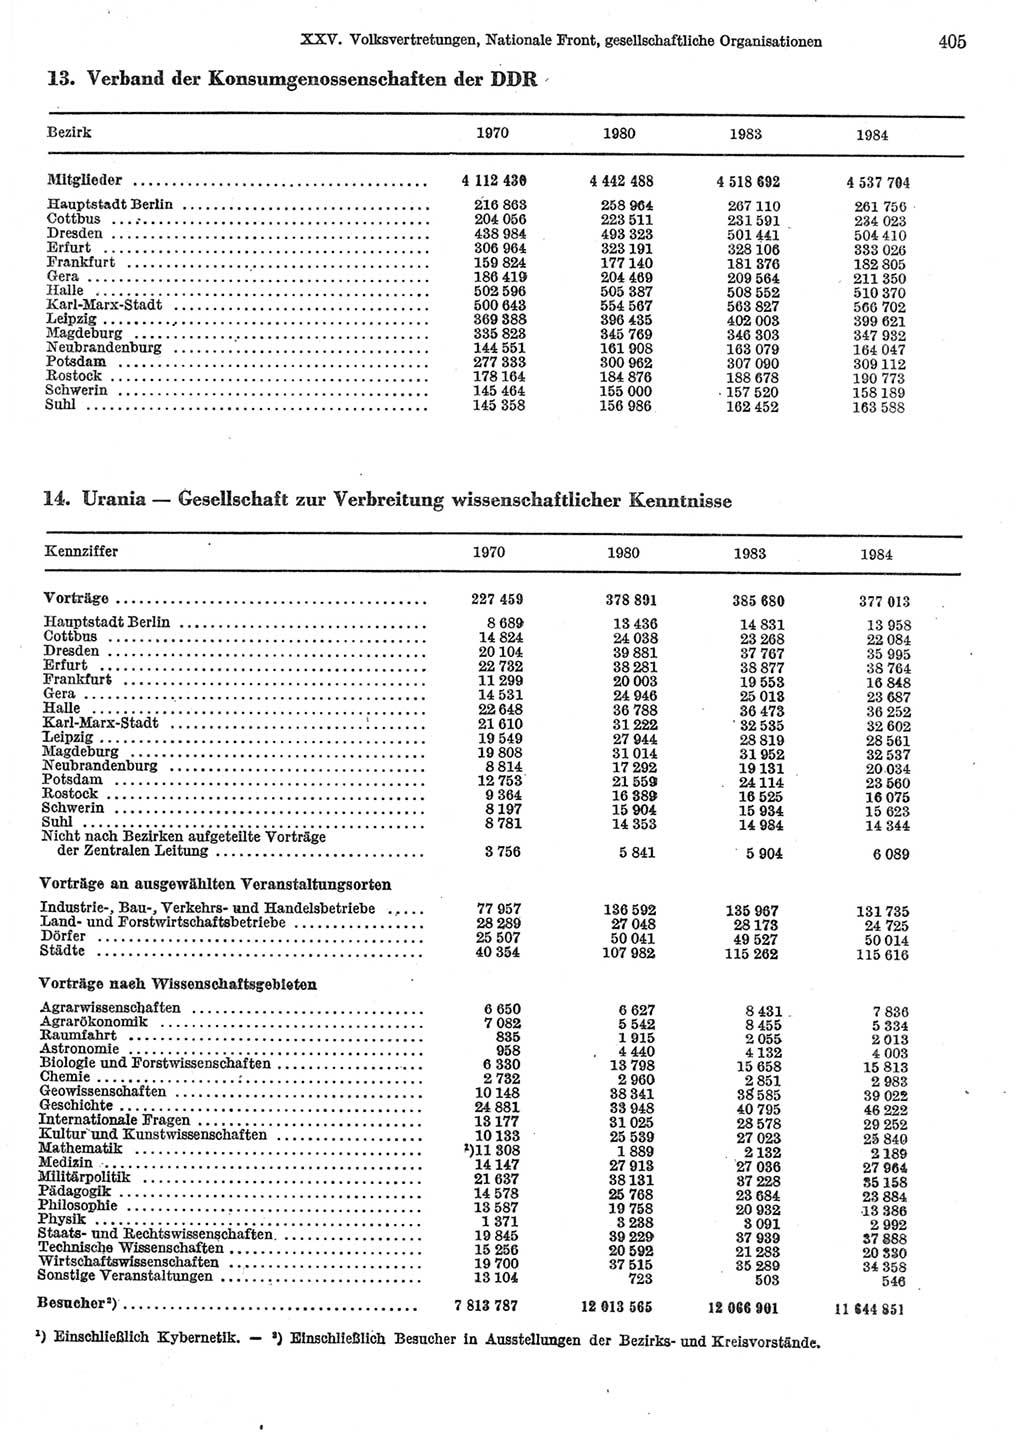 Statistisches Jahrbuch der Deutschen Demokratischen Republik (DDR) 1985, Seite 405 (Stat. Jb. DDR 1985, S. 405)